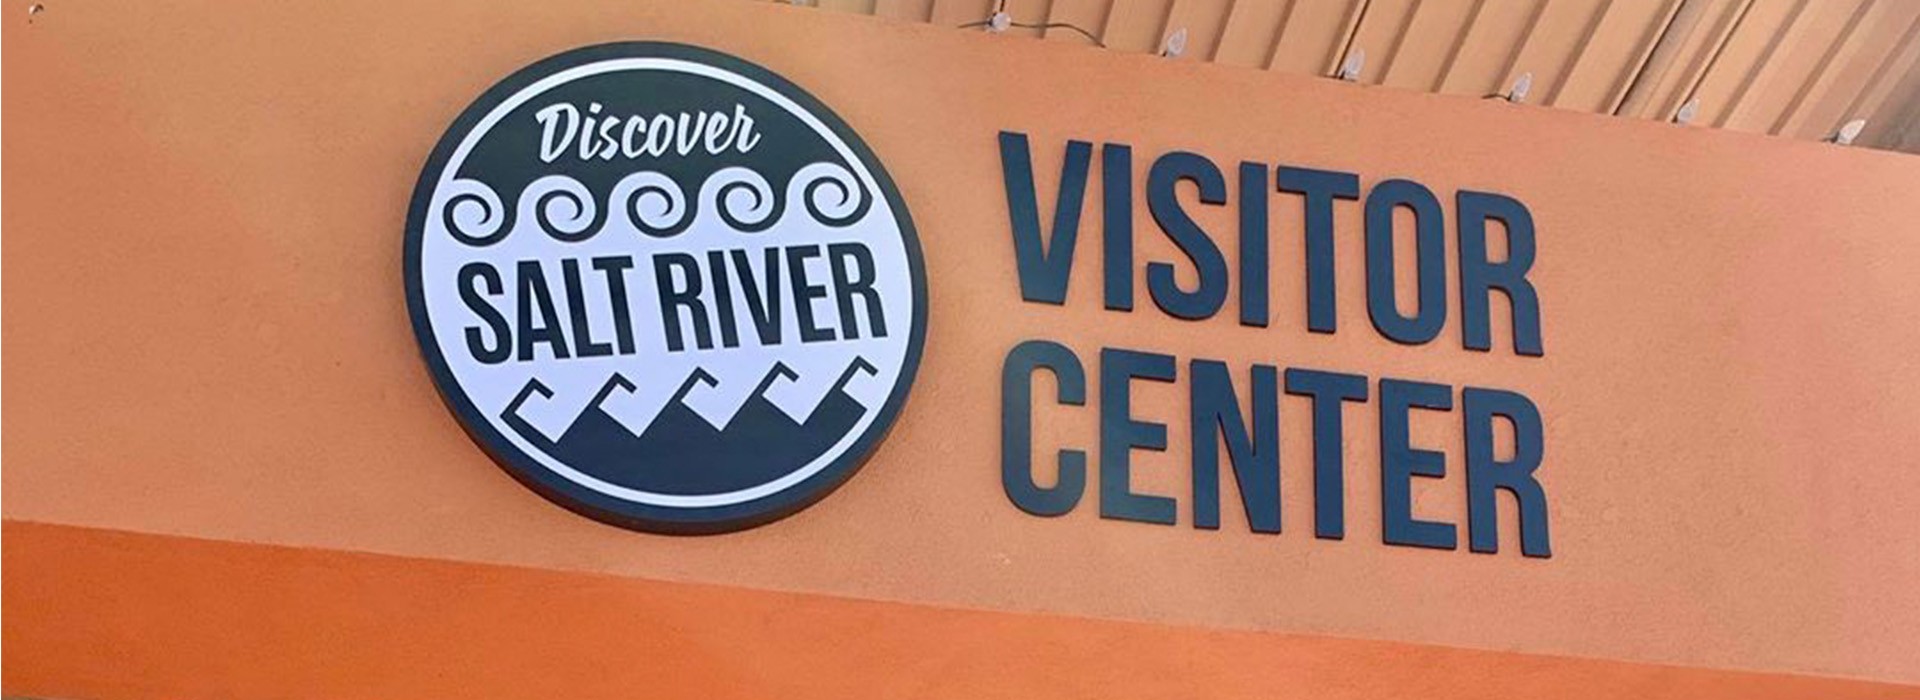 Discover Salt River Visitor Center